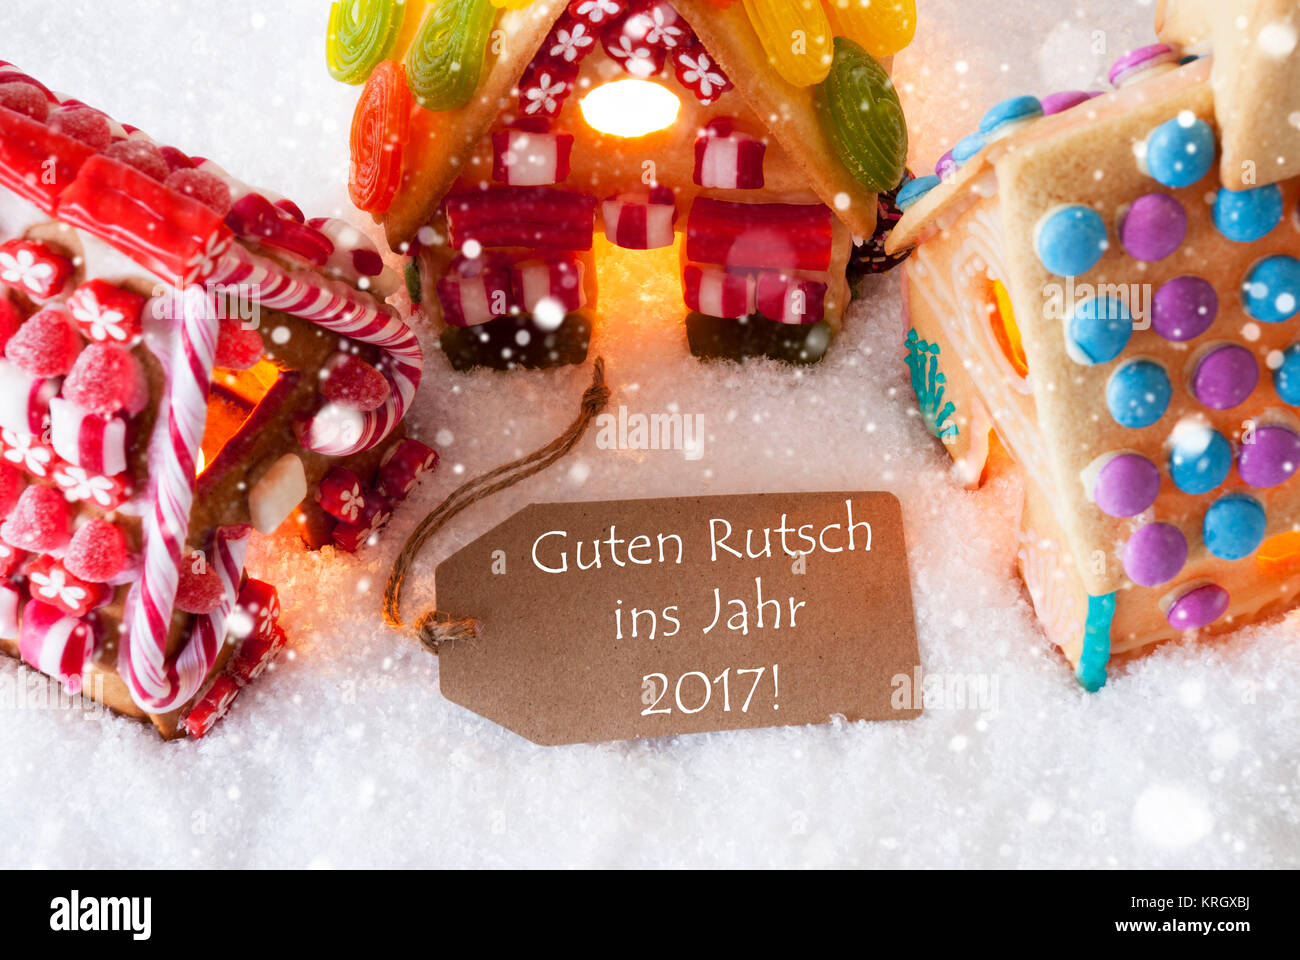 Étiquette avec texte Allemand Guten Rutsch ins Jahr 2017 signifie Bonne année 2017. Maison en pain d'Épices colorés sur la neige et les flocons. Carte de Noël pour le temps des Fêtes Banque D'Images